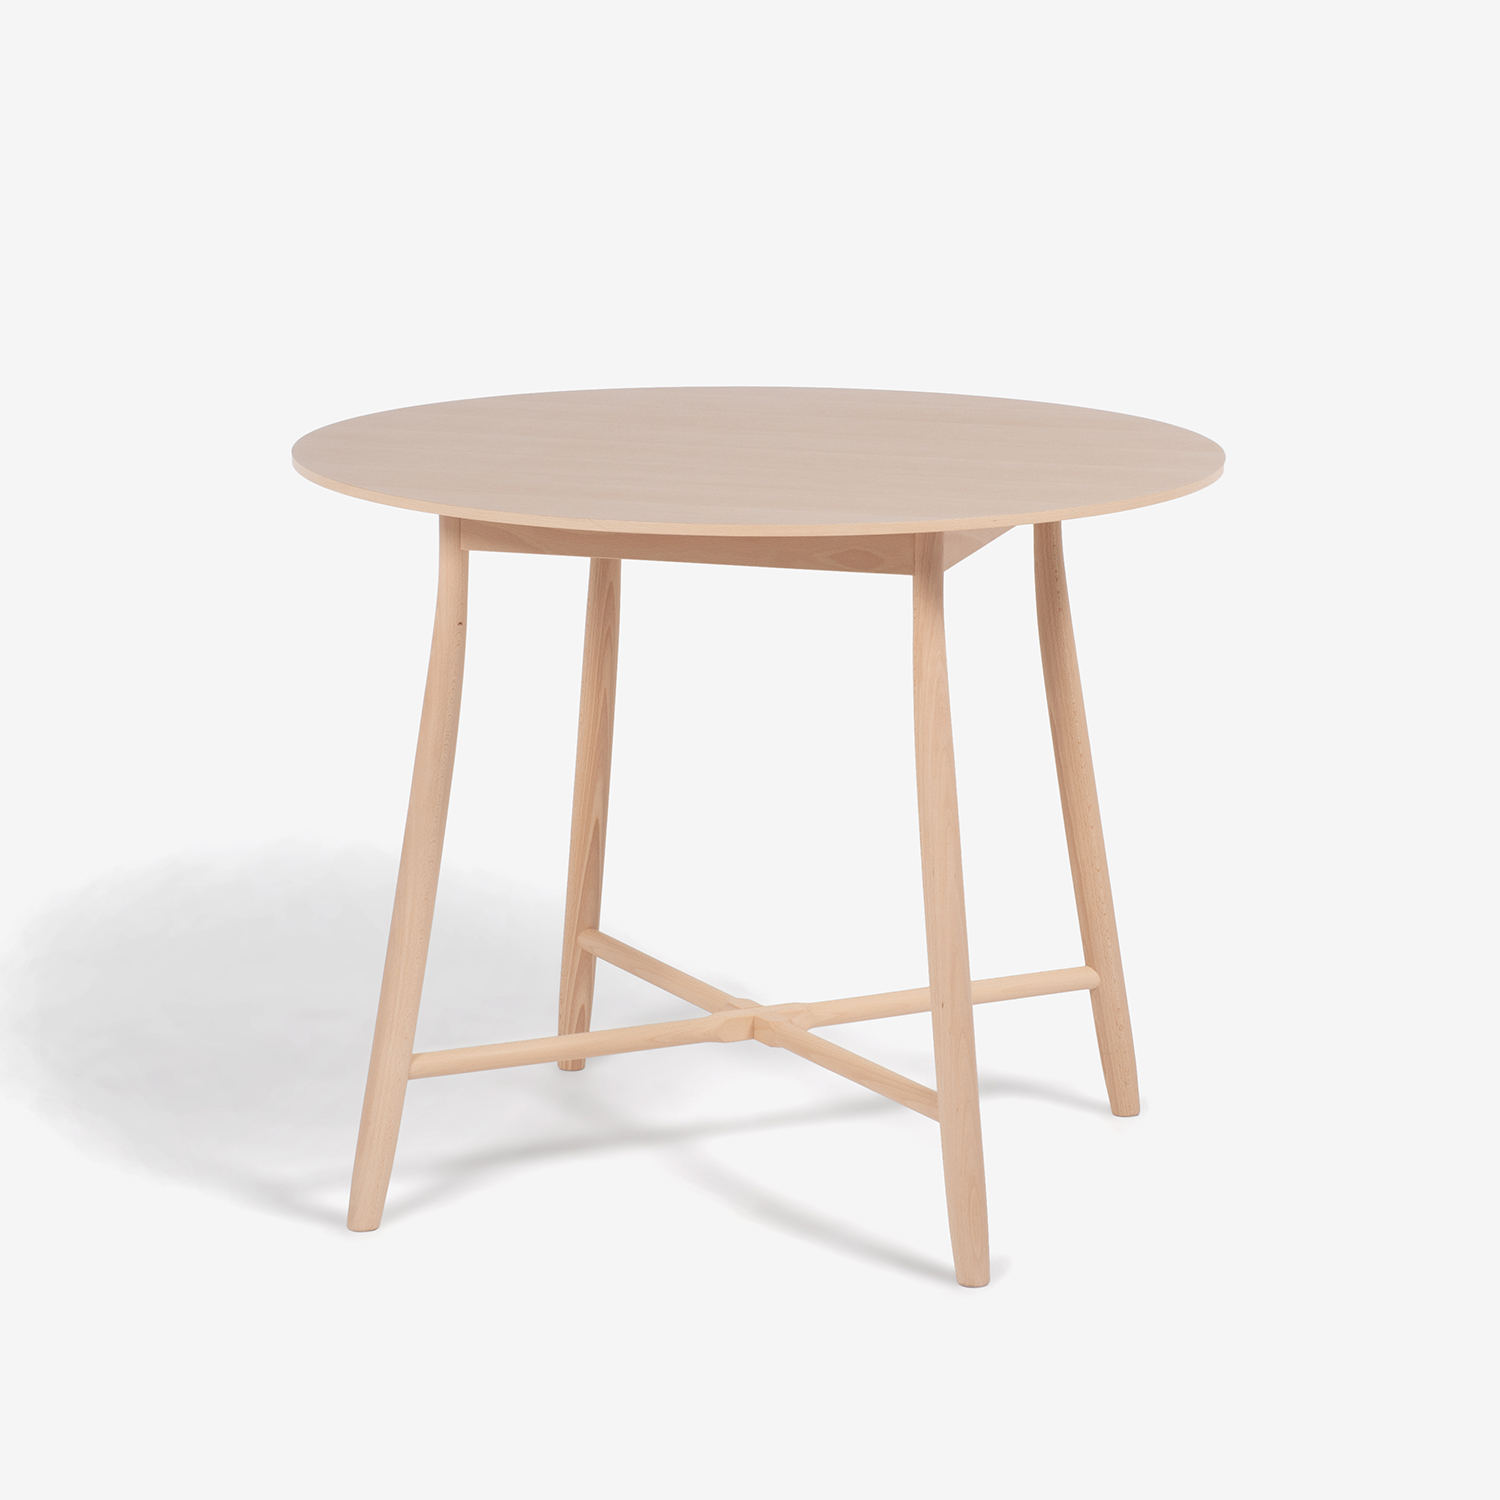 秋田木工 ダイニングテーブル「209EB」ブナ材 白木塗装【決算セールのため30%OFF】